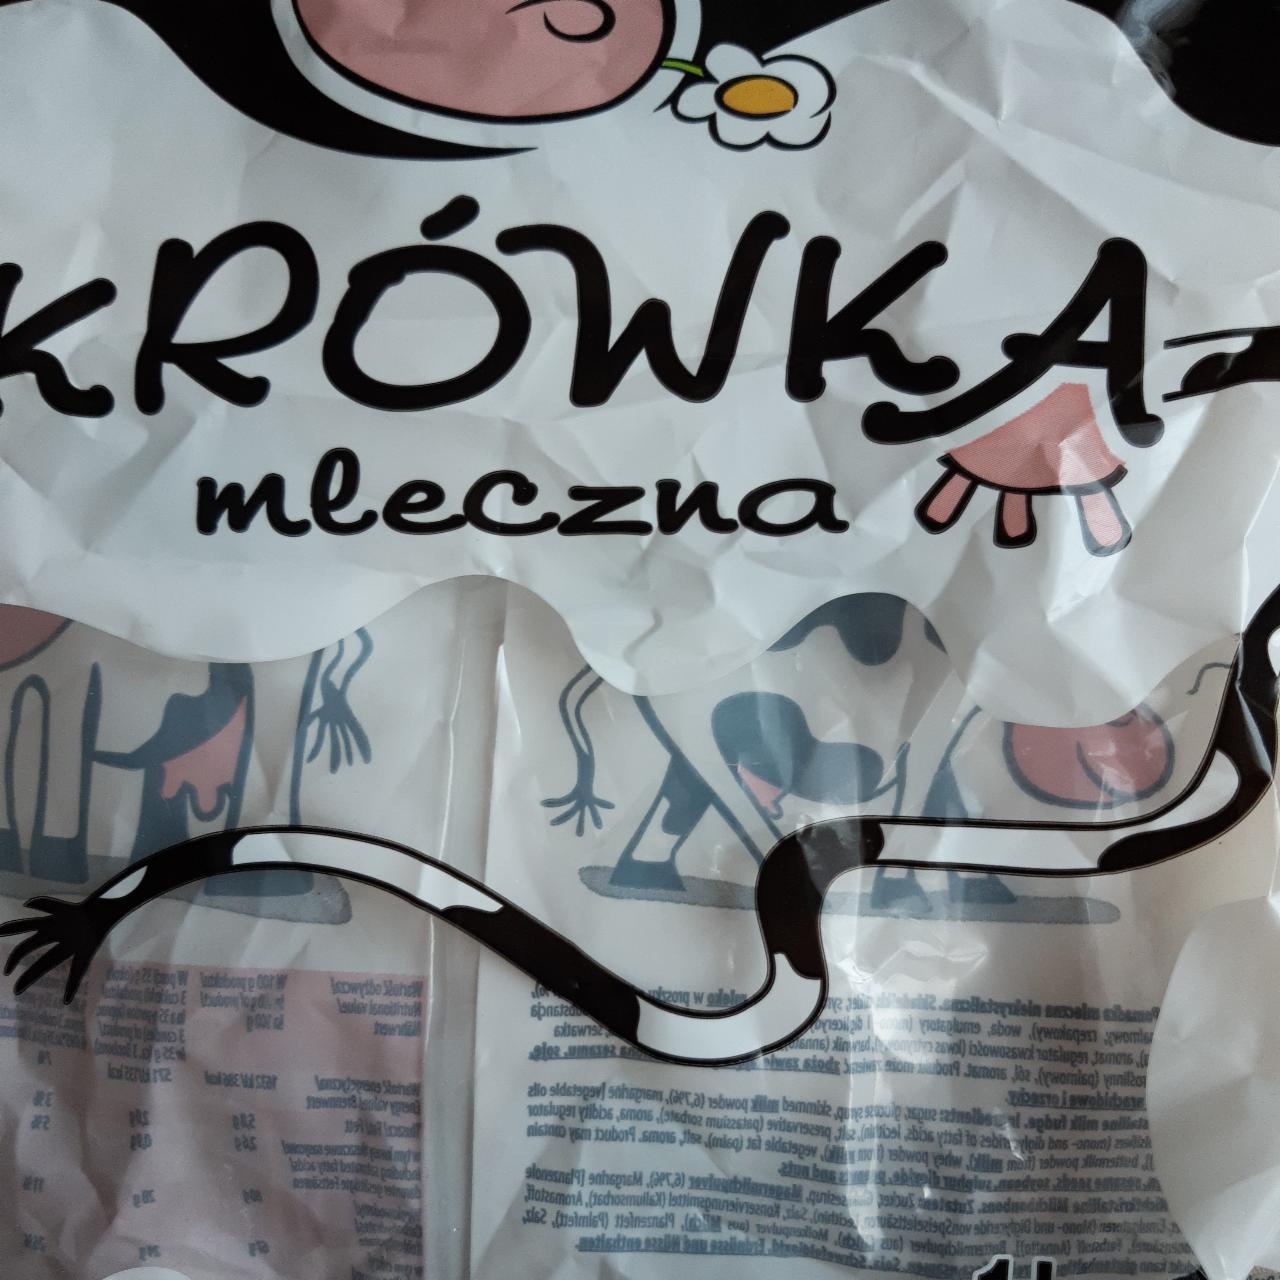 Fotografie - Krowka mleczna Jutrzenka